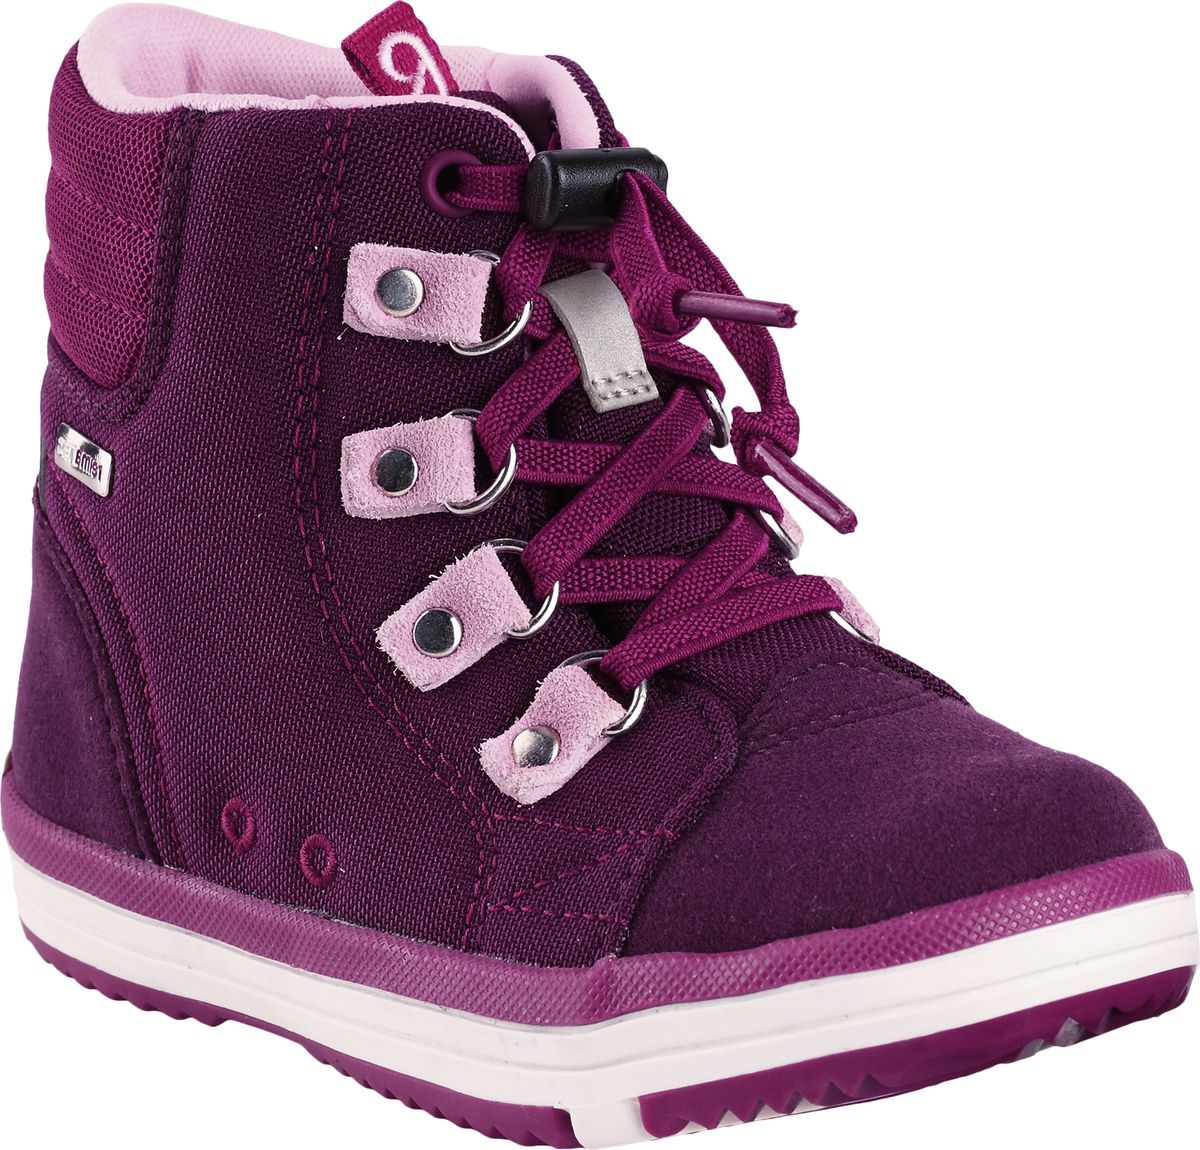 Ботинки детские Reima Wetter, цвет: фиолетовый. 5693434960. Размер 34